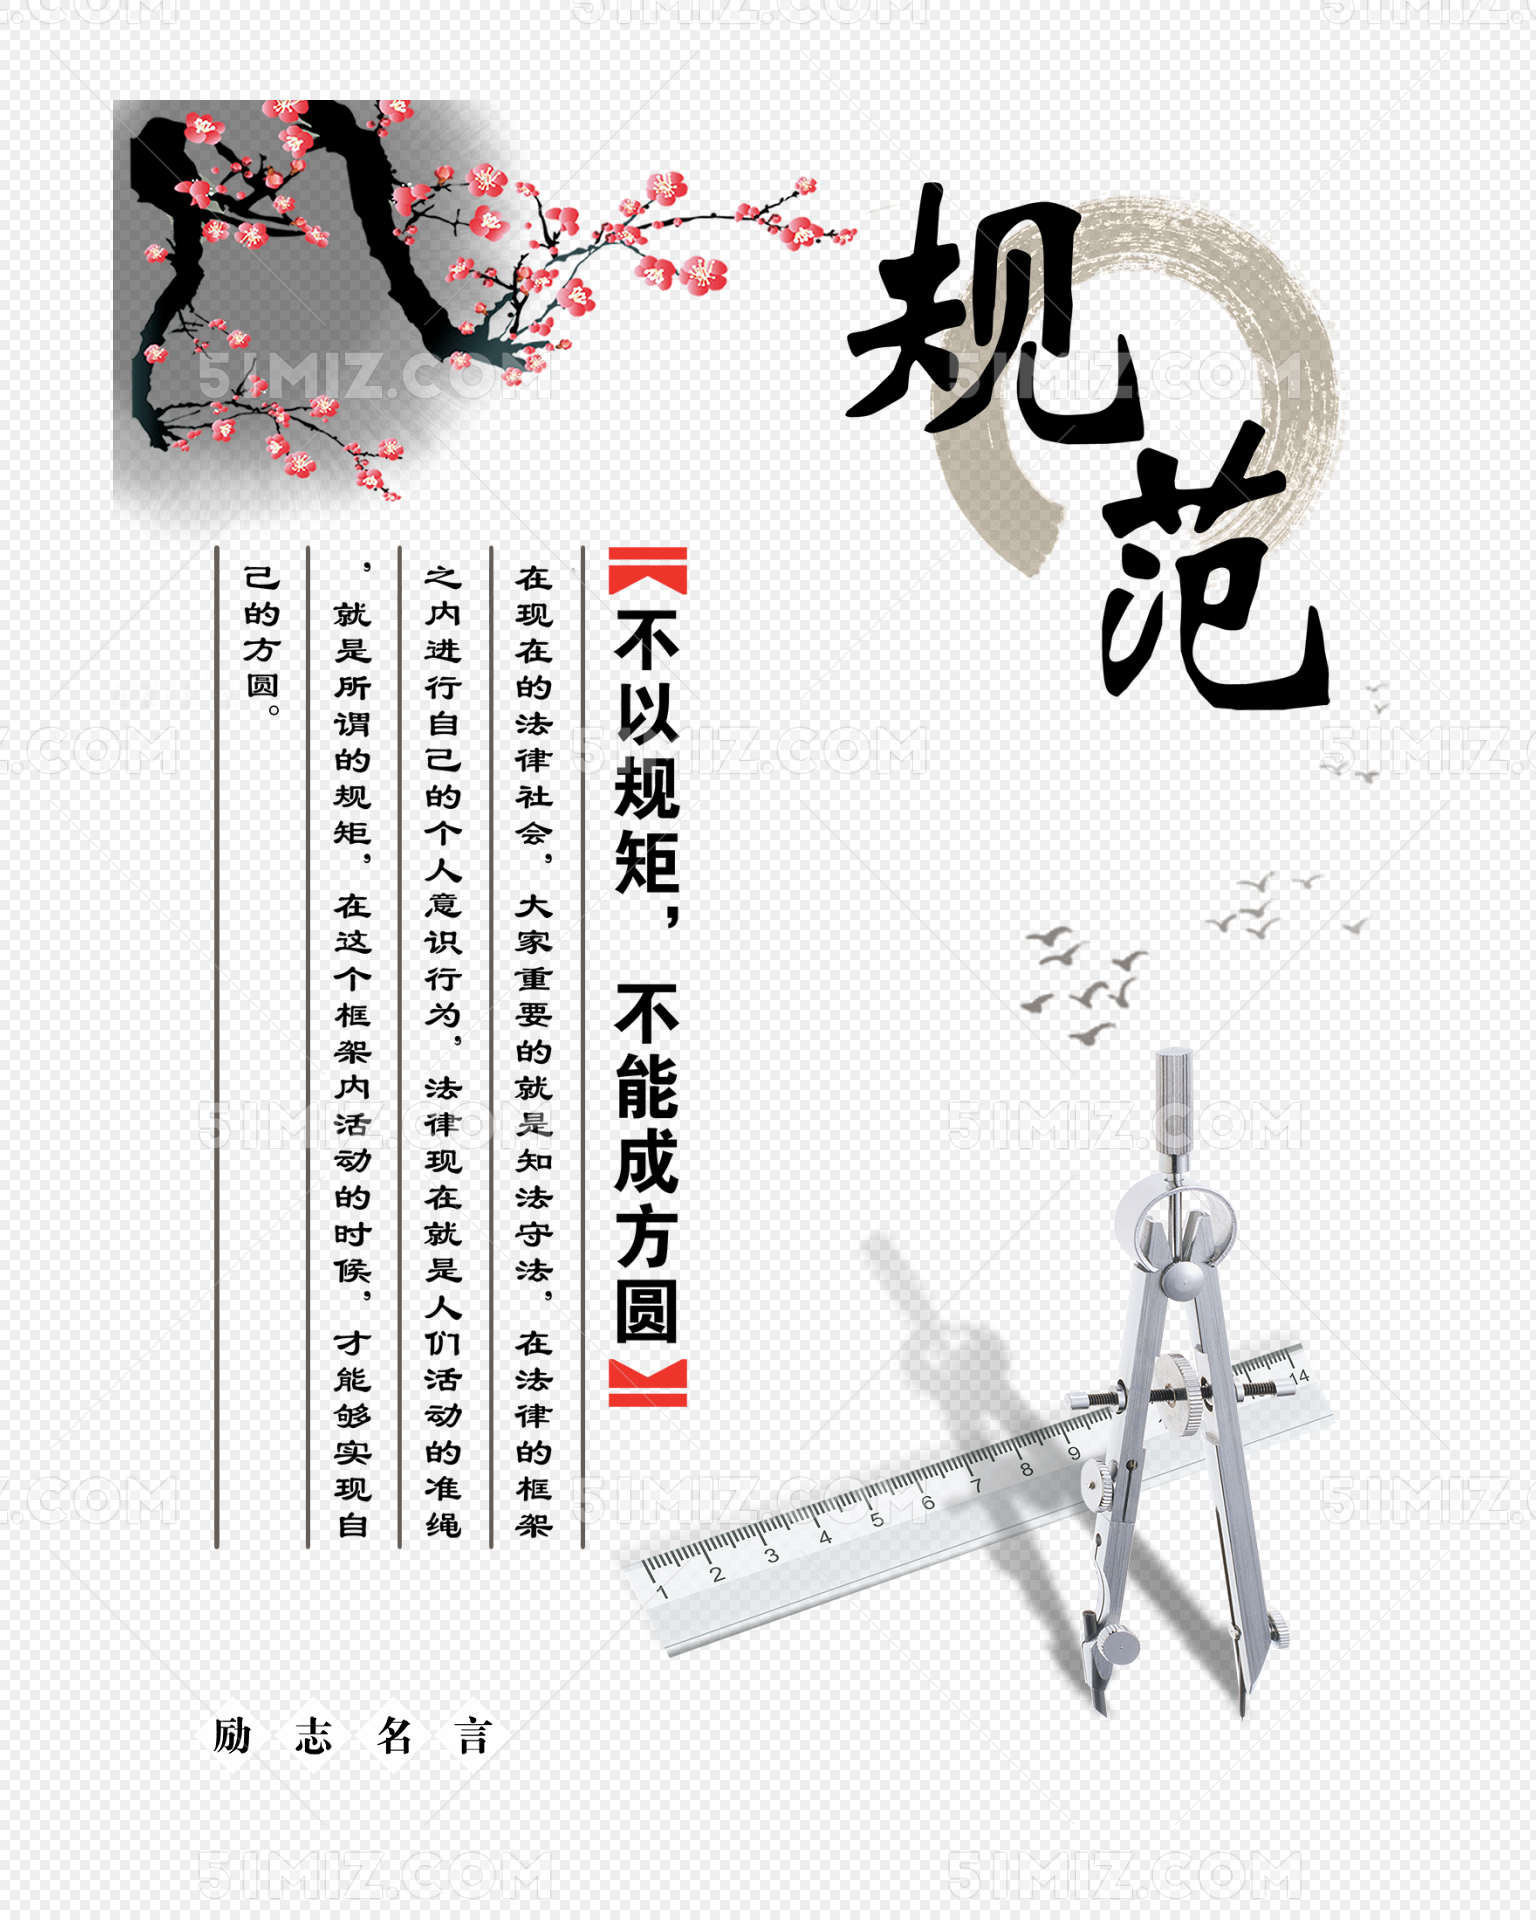 中国风背景励志名言名言图片素材免费下载 觅知网